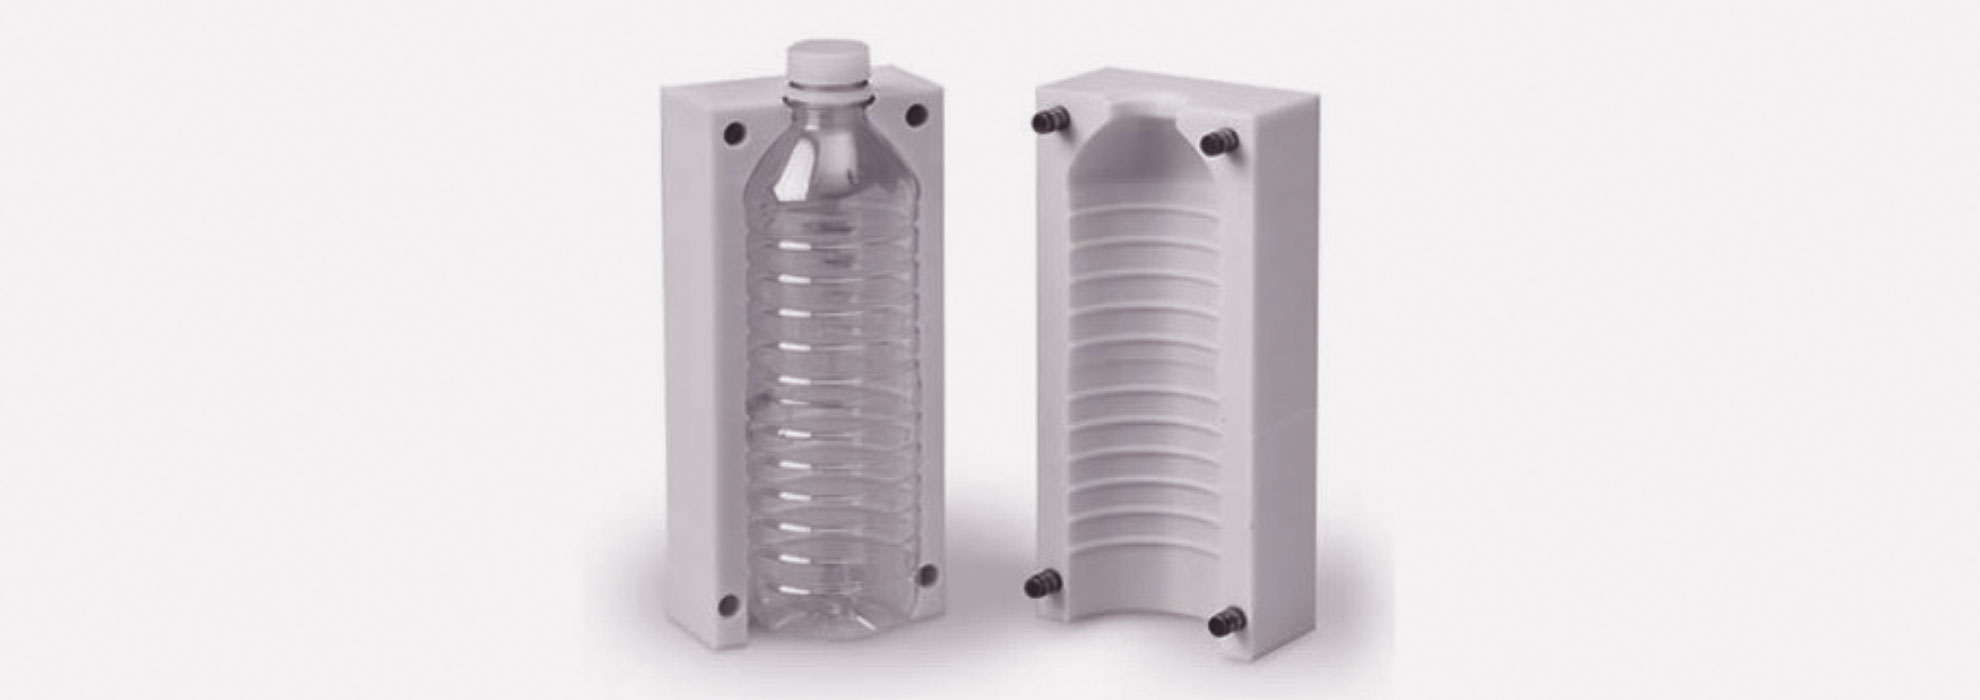 Форма для изготовления фигурных пластиковых бутылок